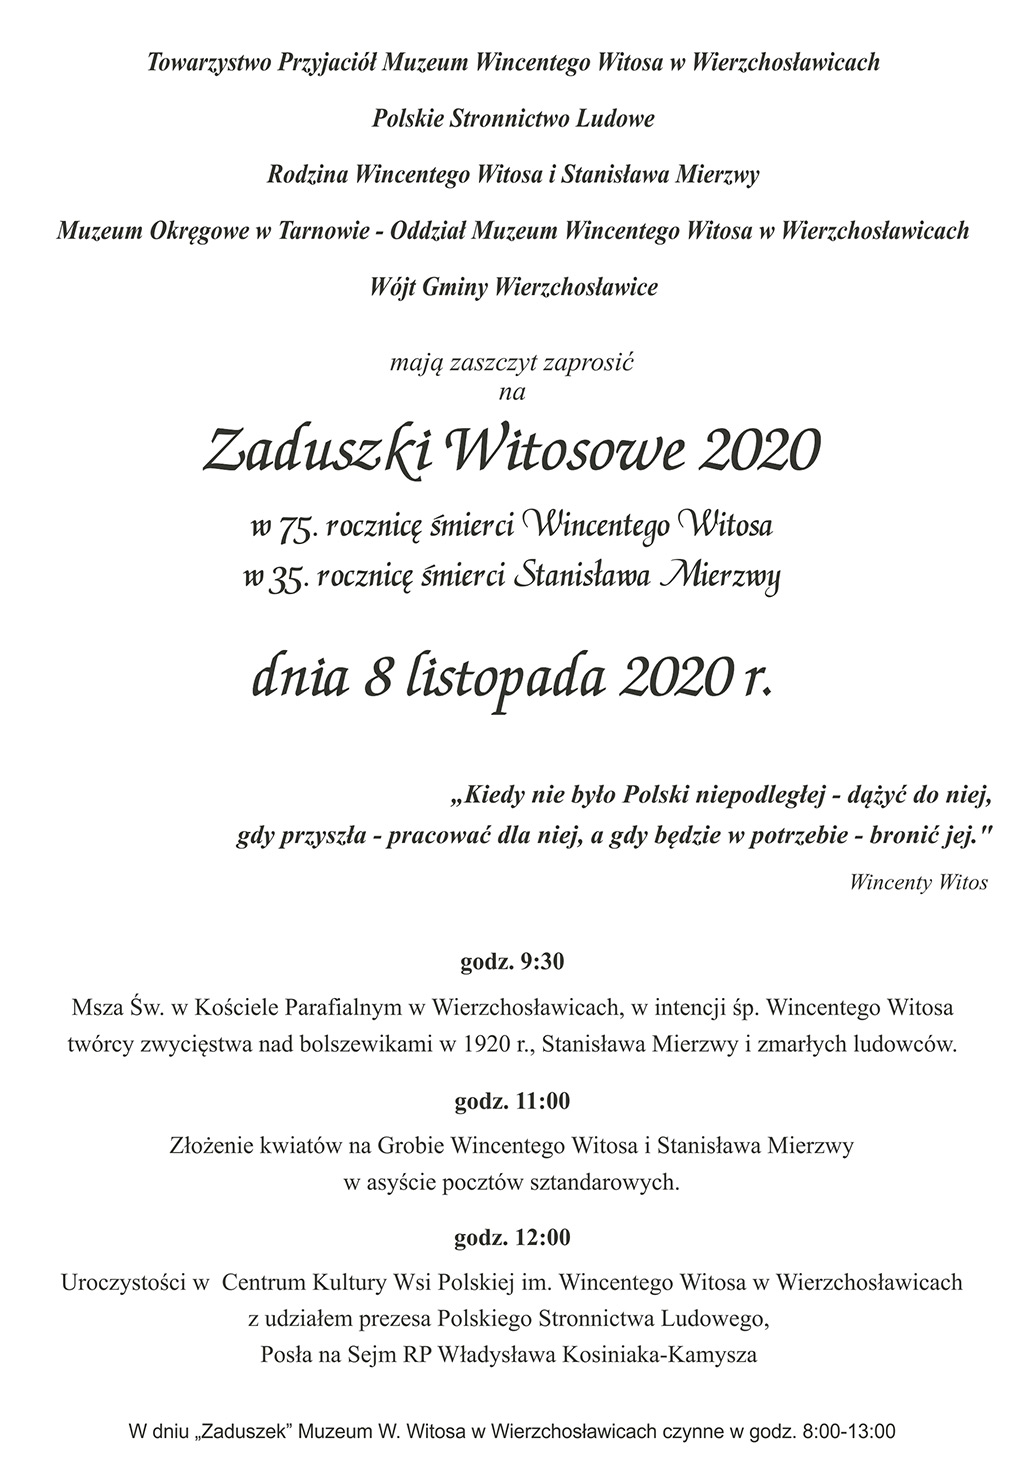 Zaproszenie na zaduszki witosowe 2020